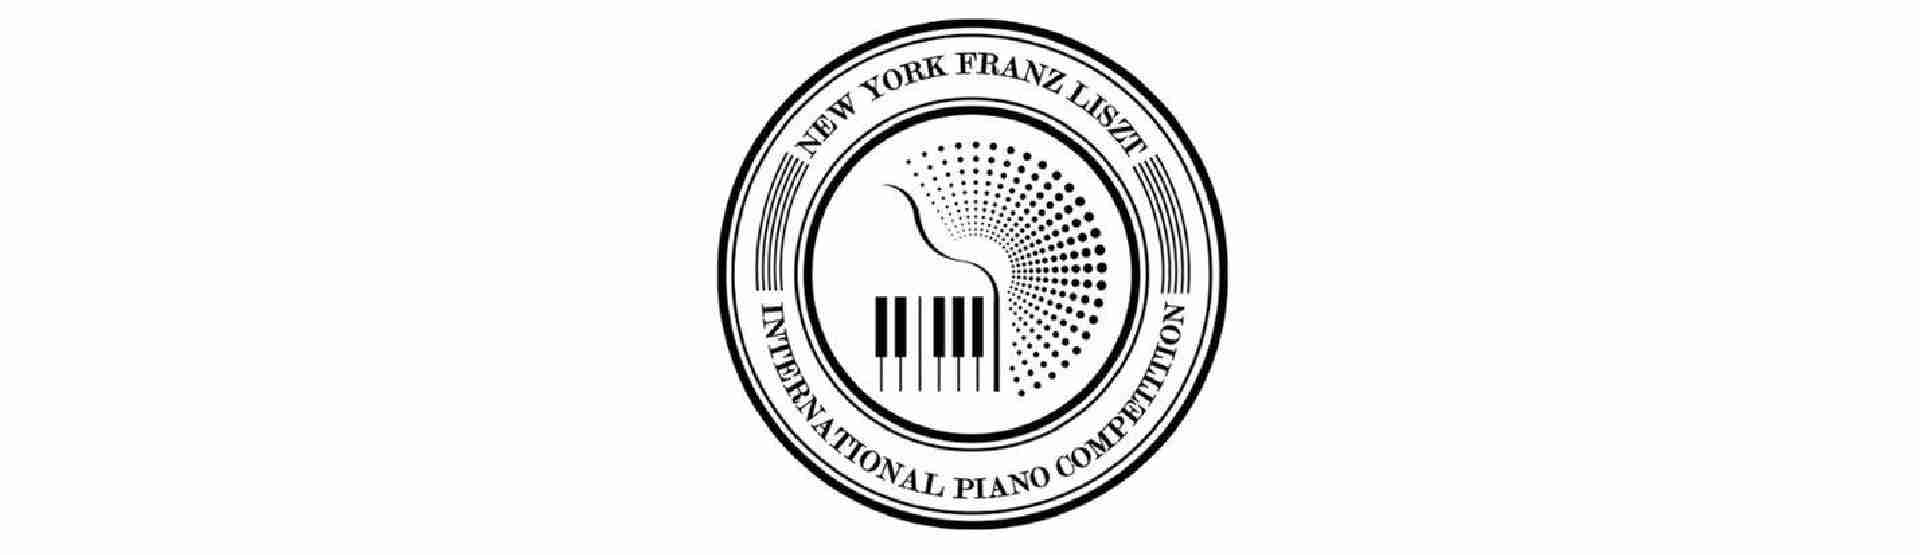 Poziv na natječaj: II. Pijanističko natjecanje Ferenc Liszt u New Yorku